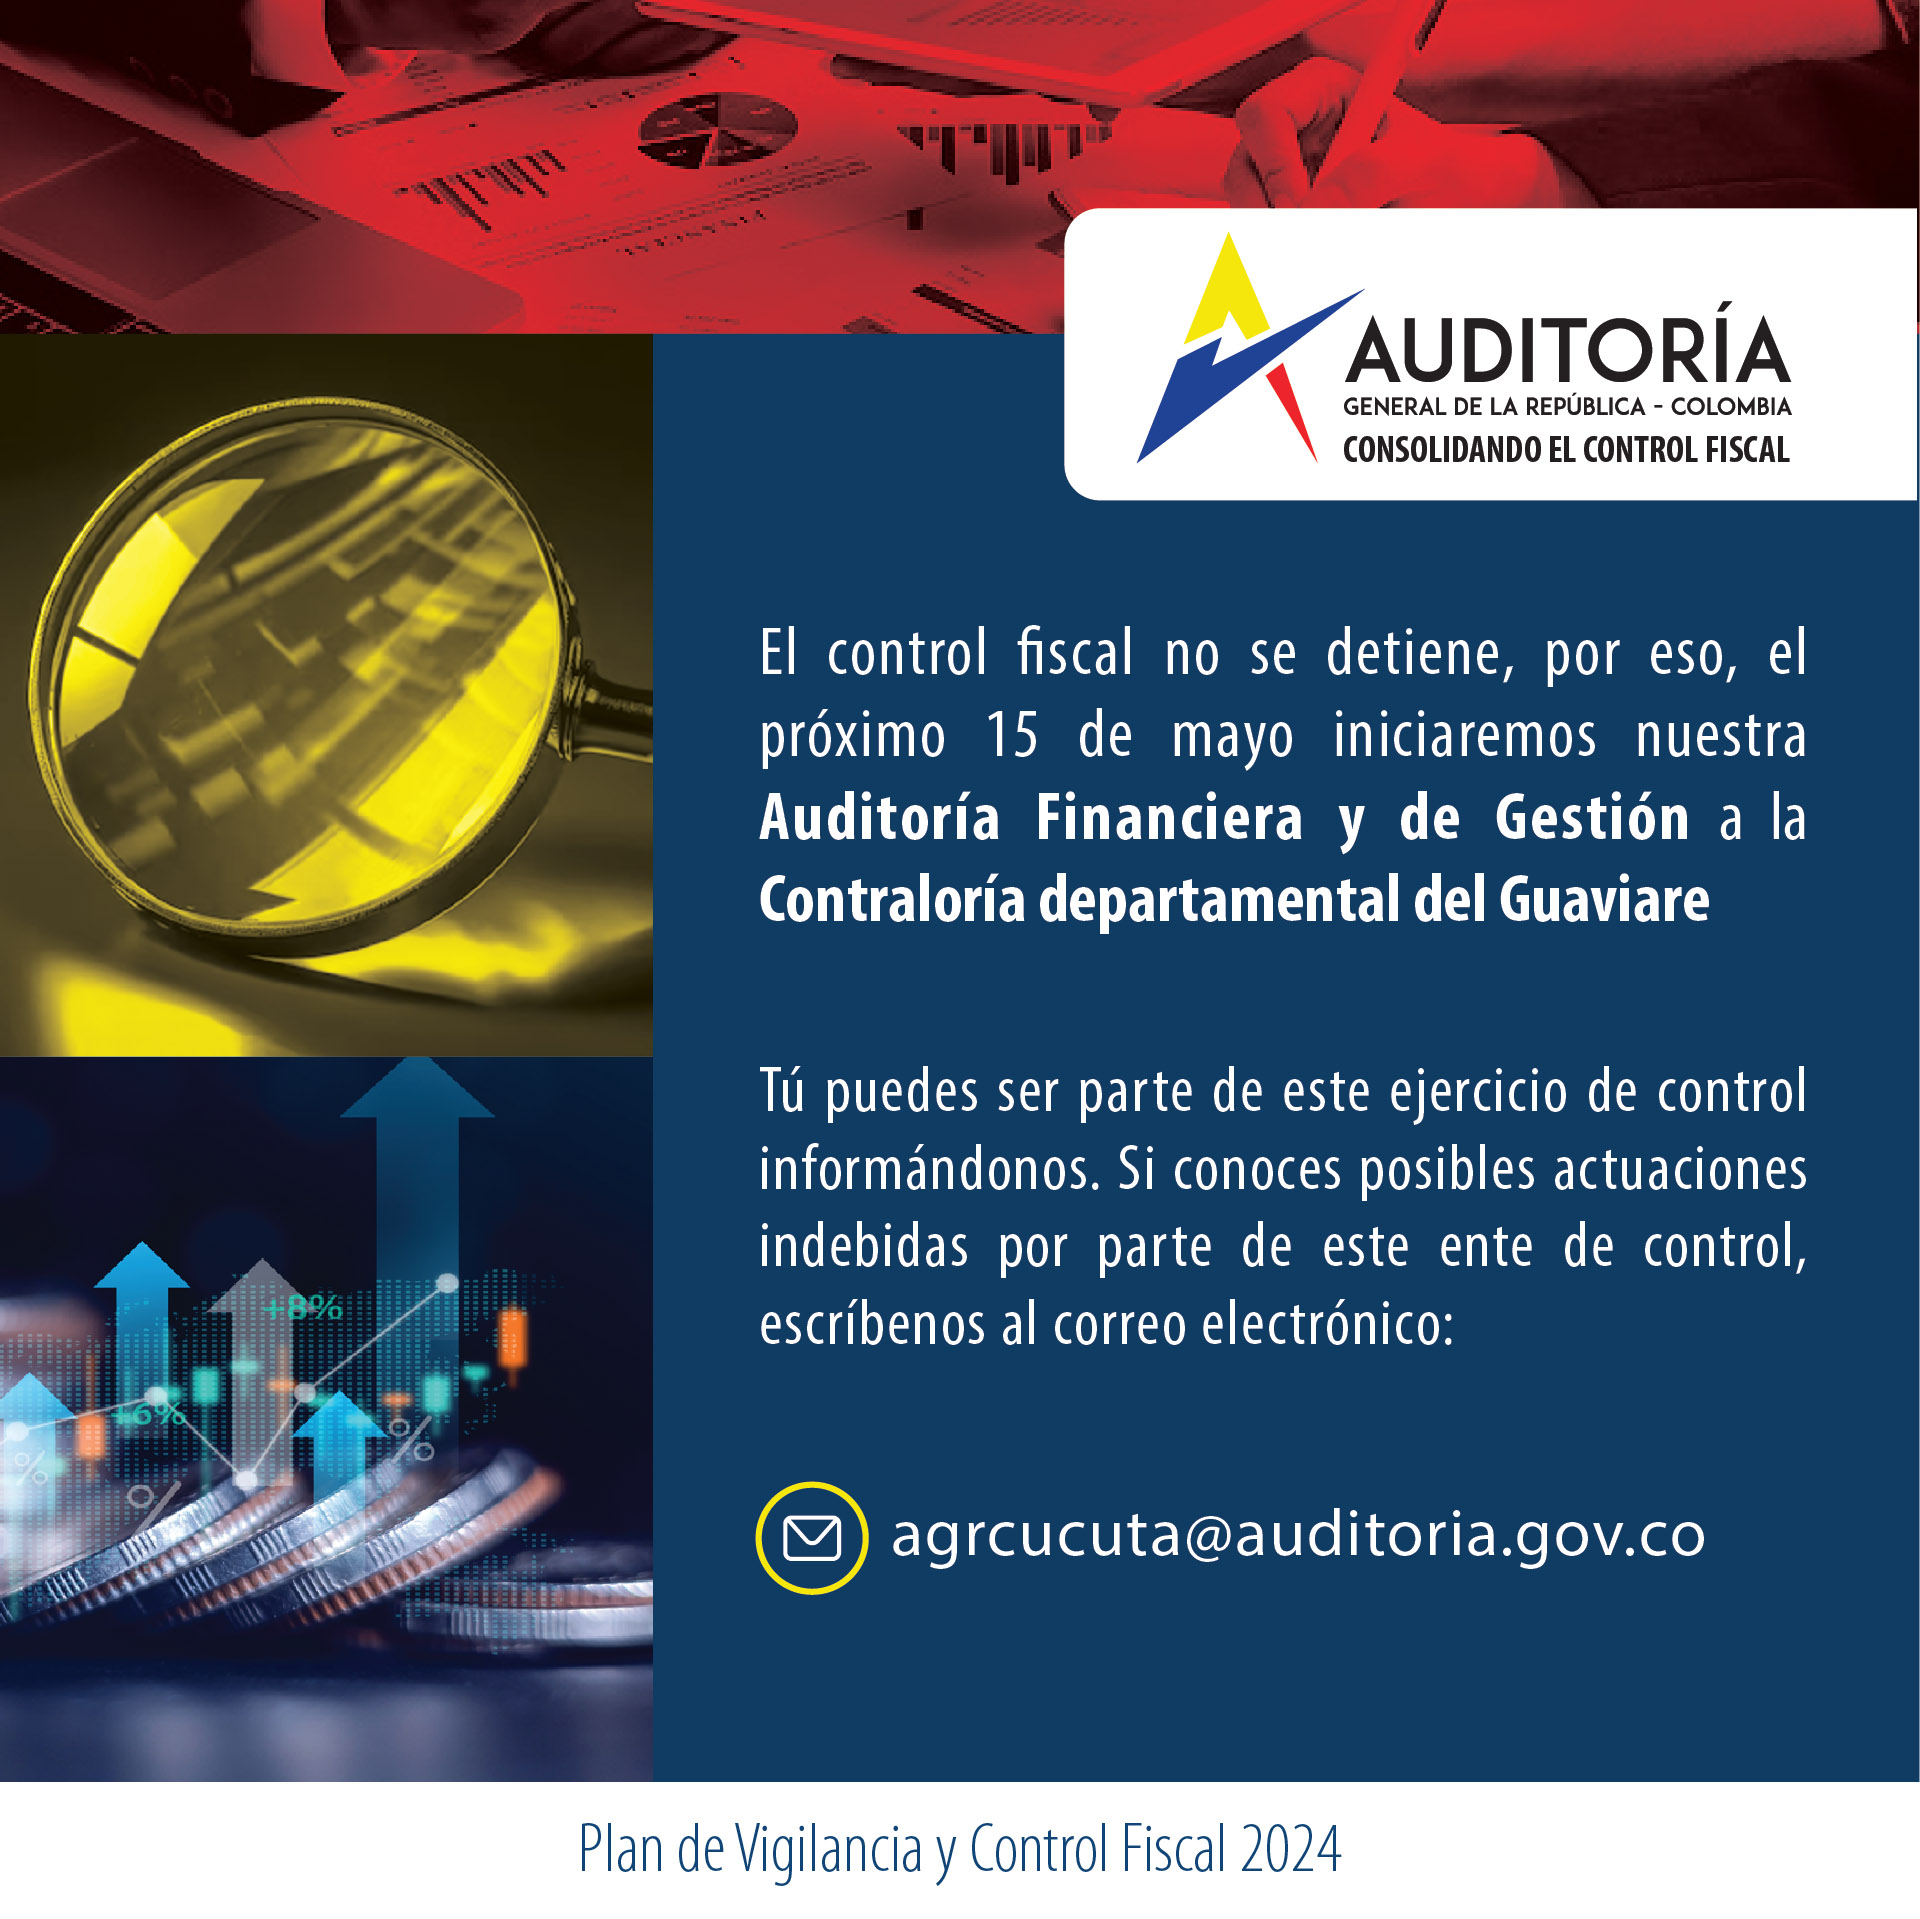 Invitación a ciudadanía a brindar información para Auditoría Financiera y de Gestión a Contraloría de l Guaviare